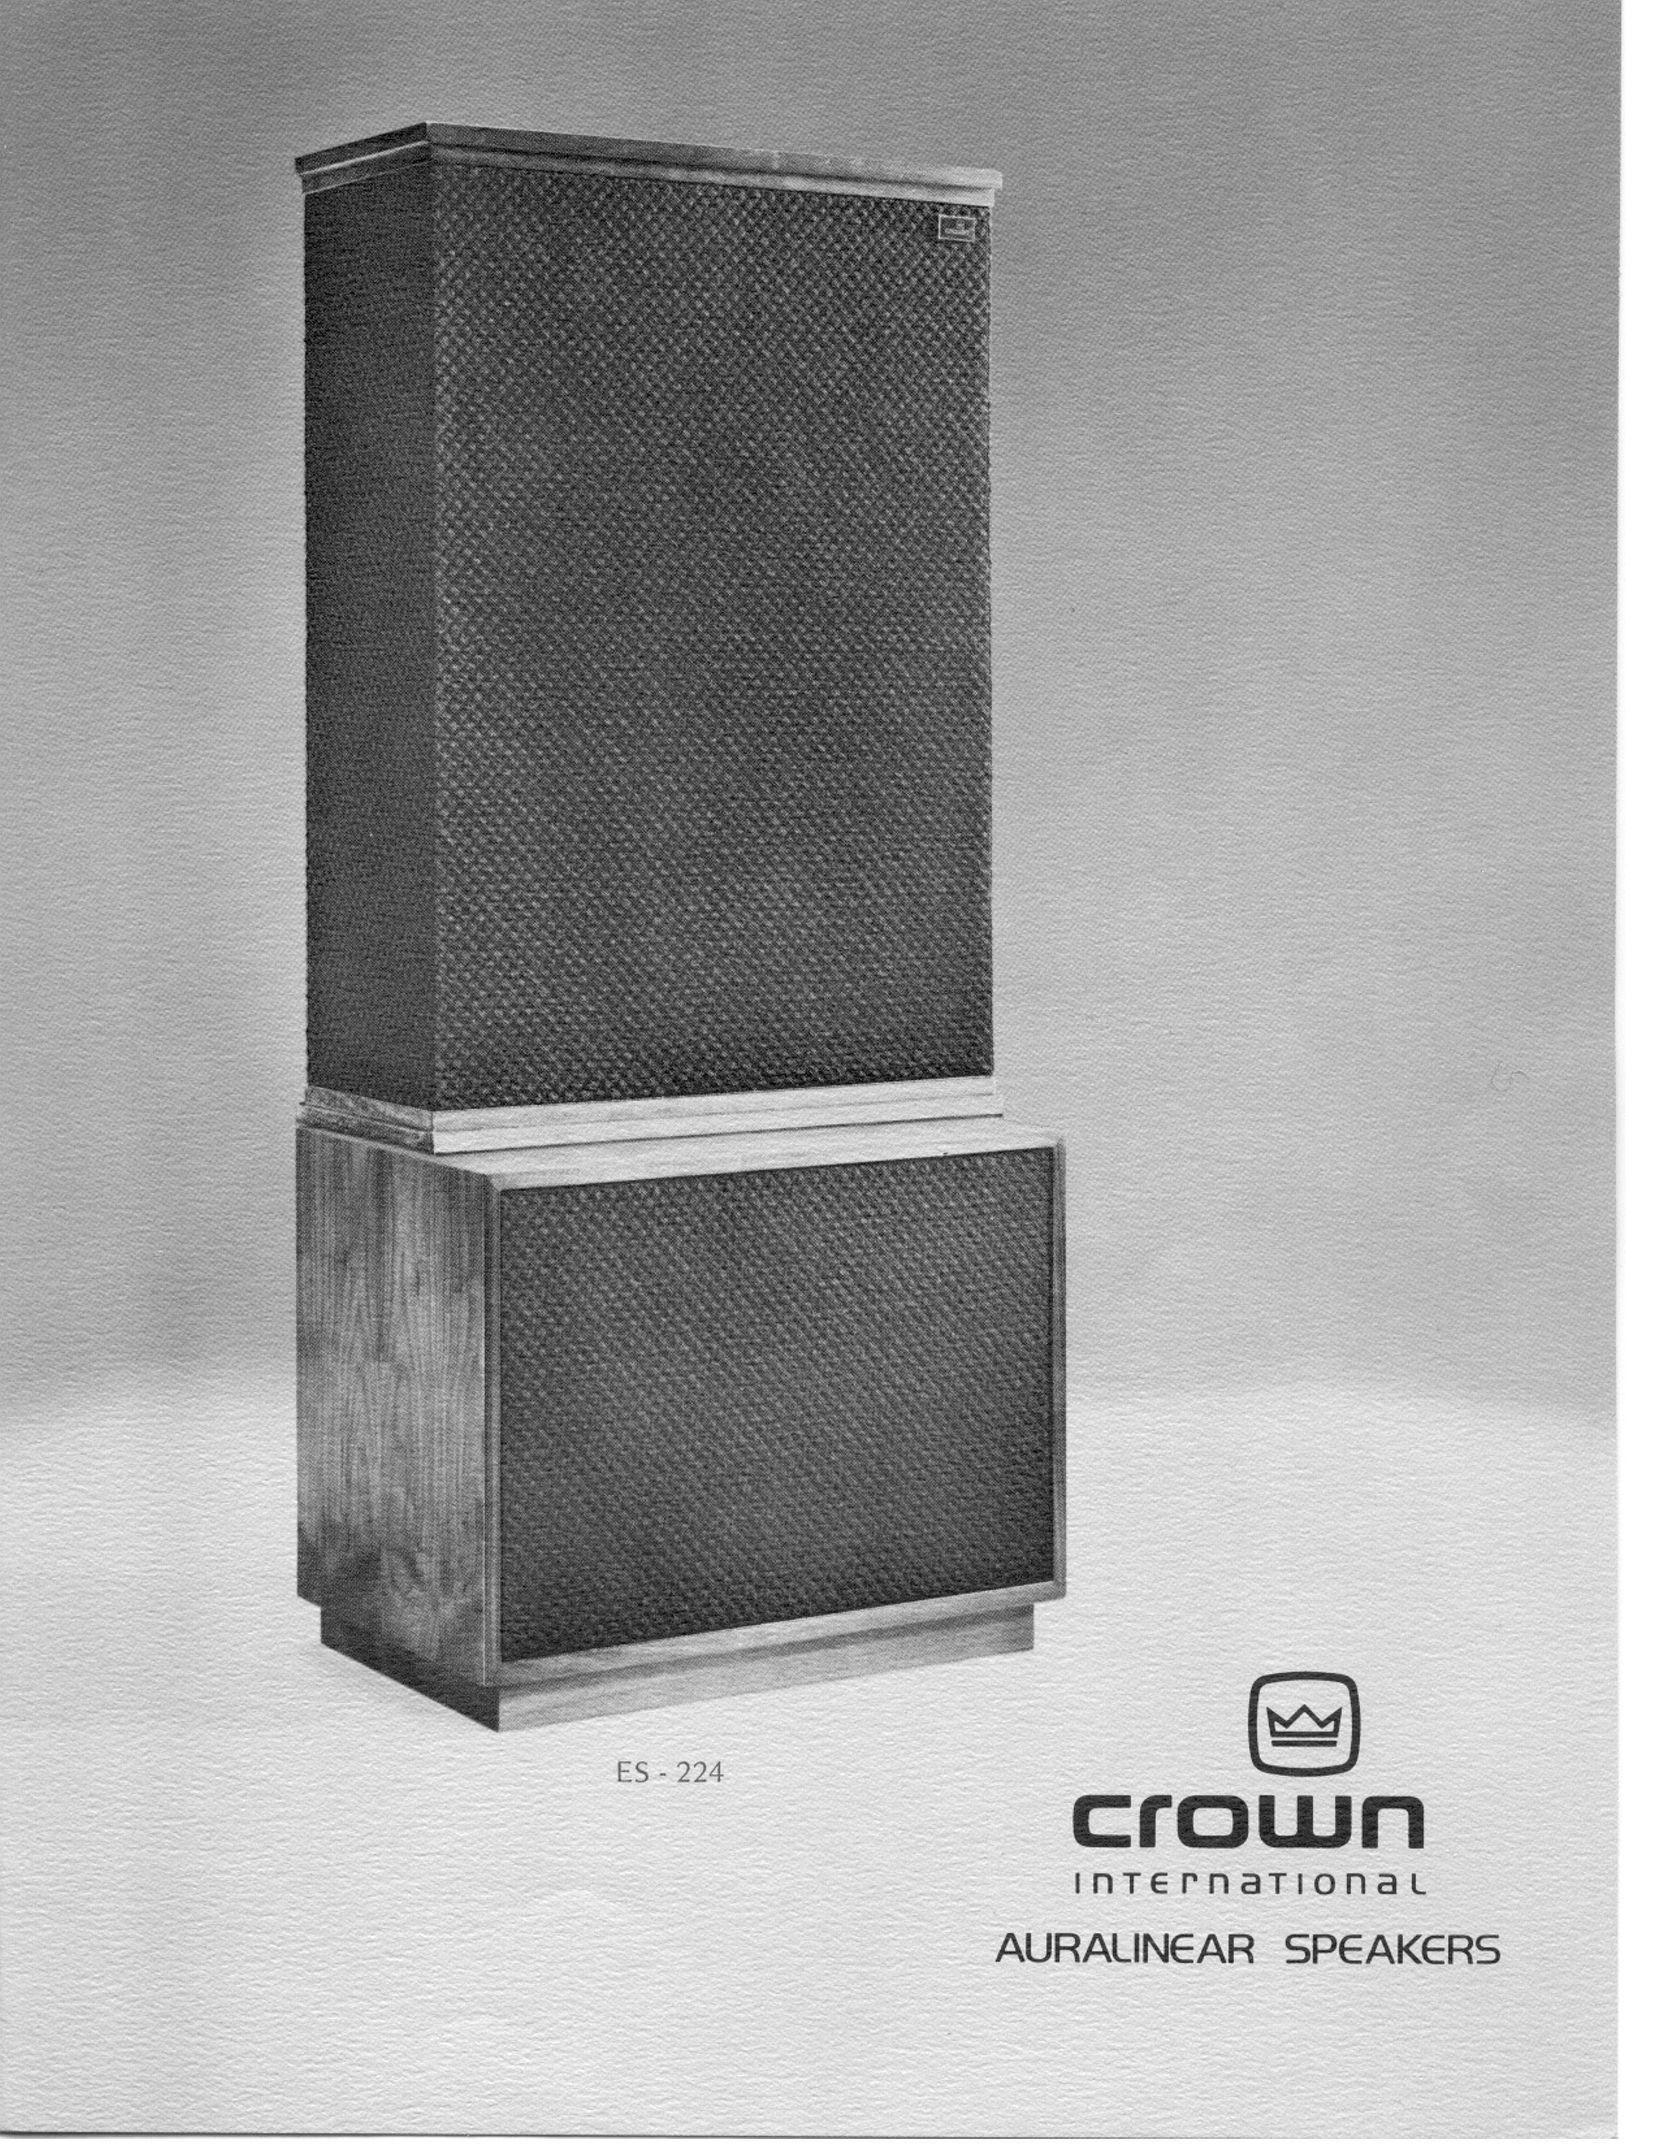 Crown Audio ES-224 Portable Speaker User Manual